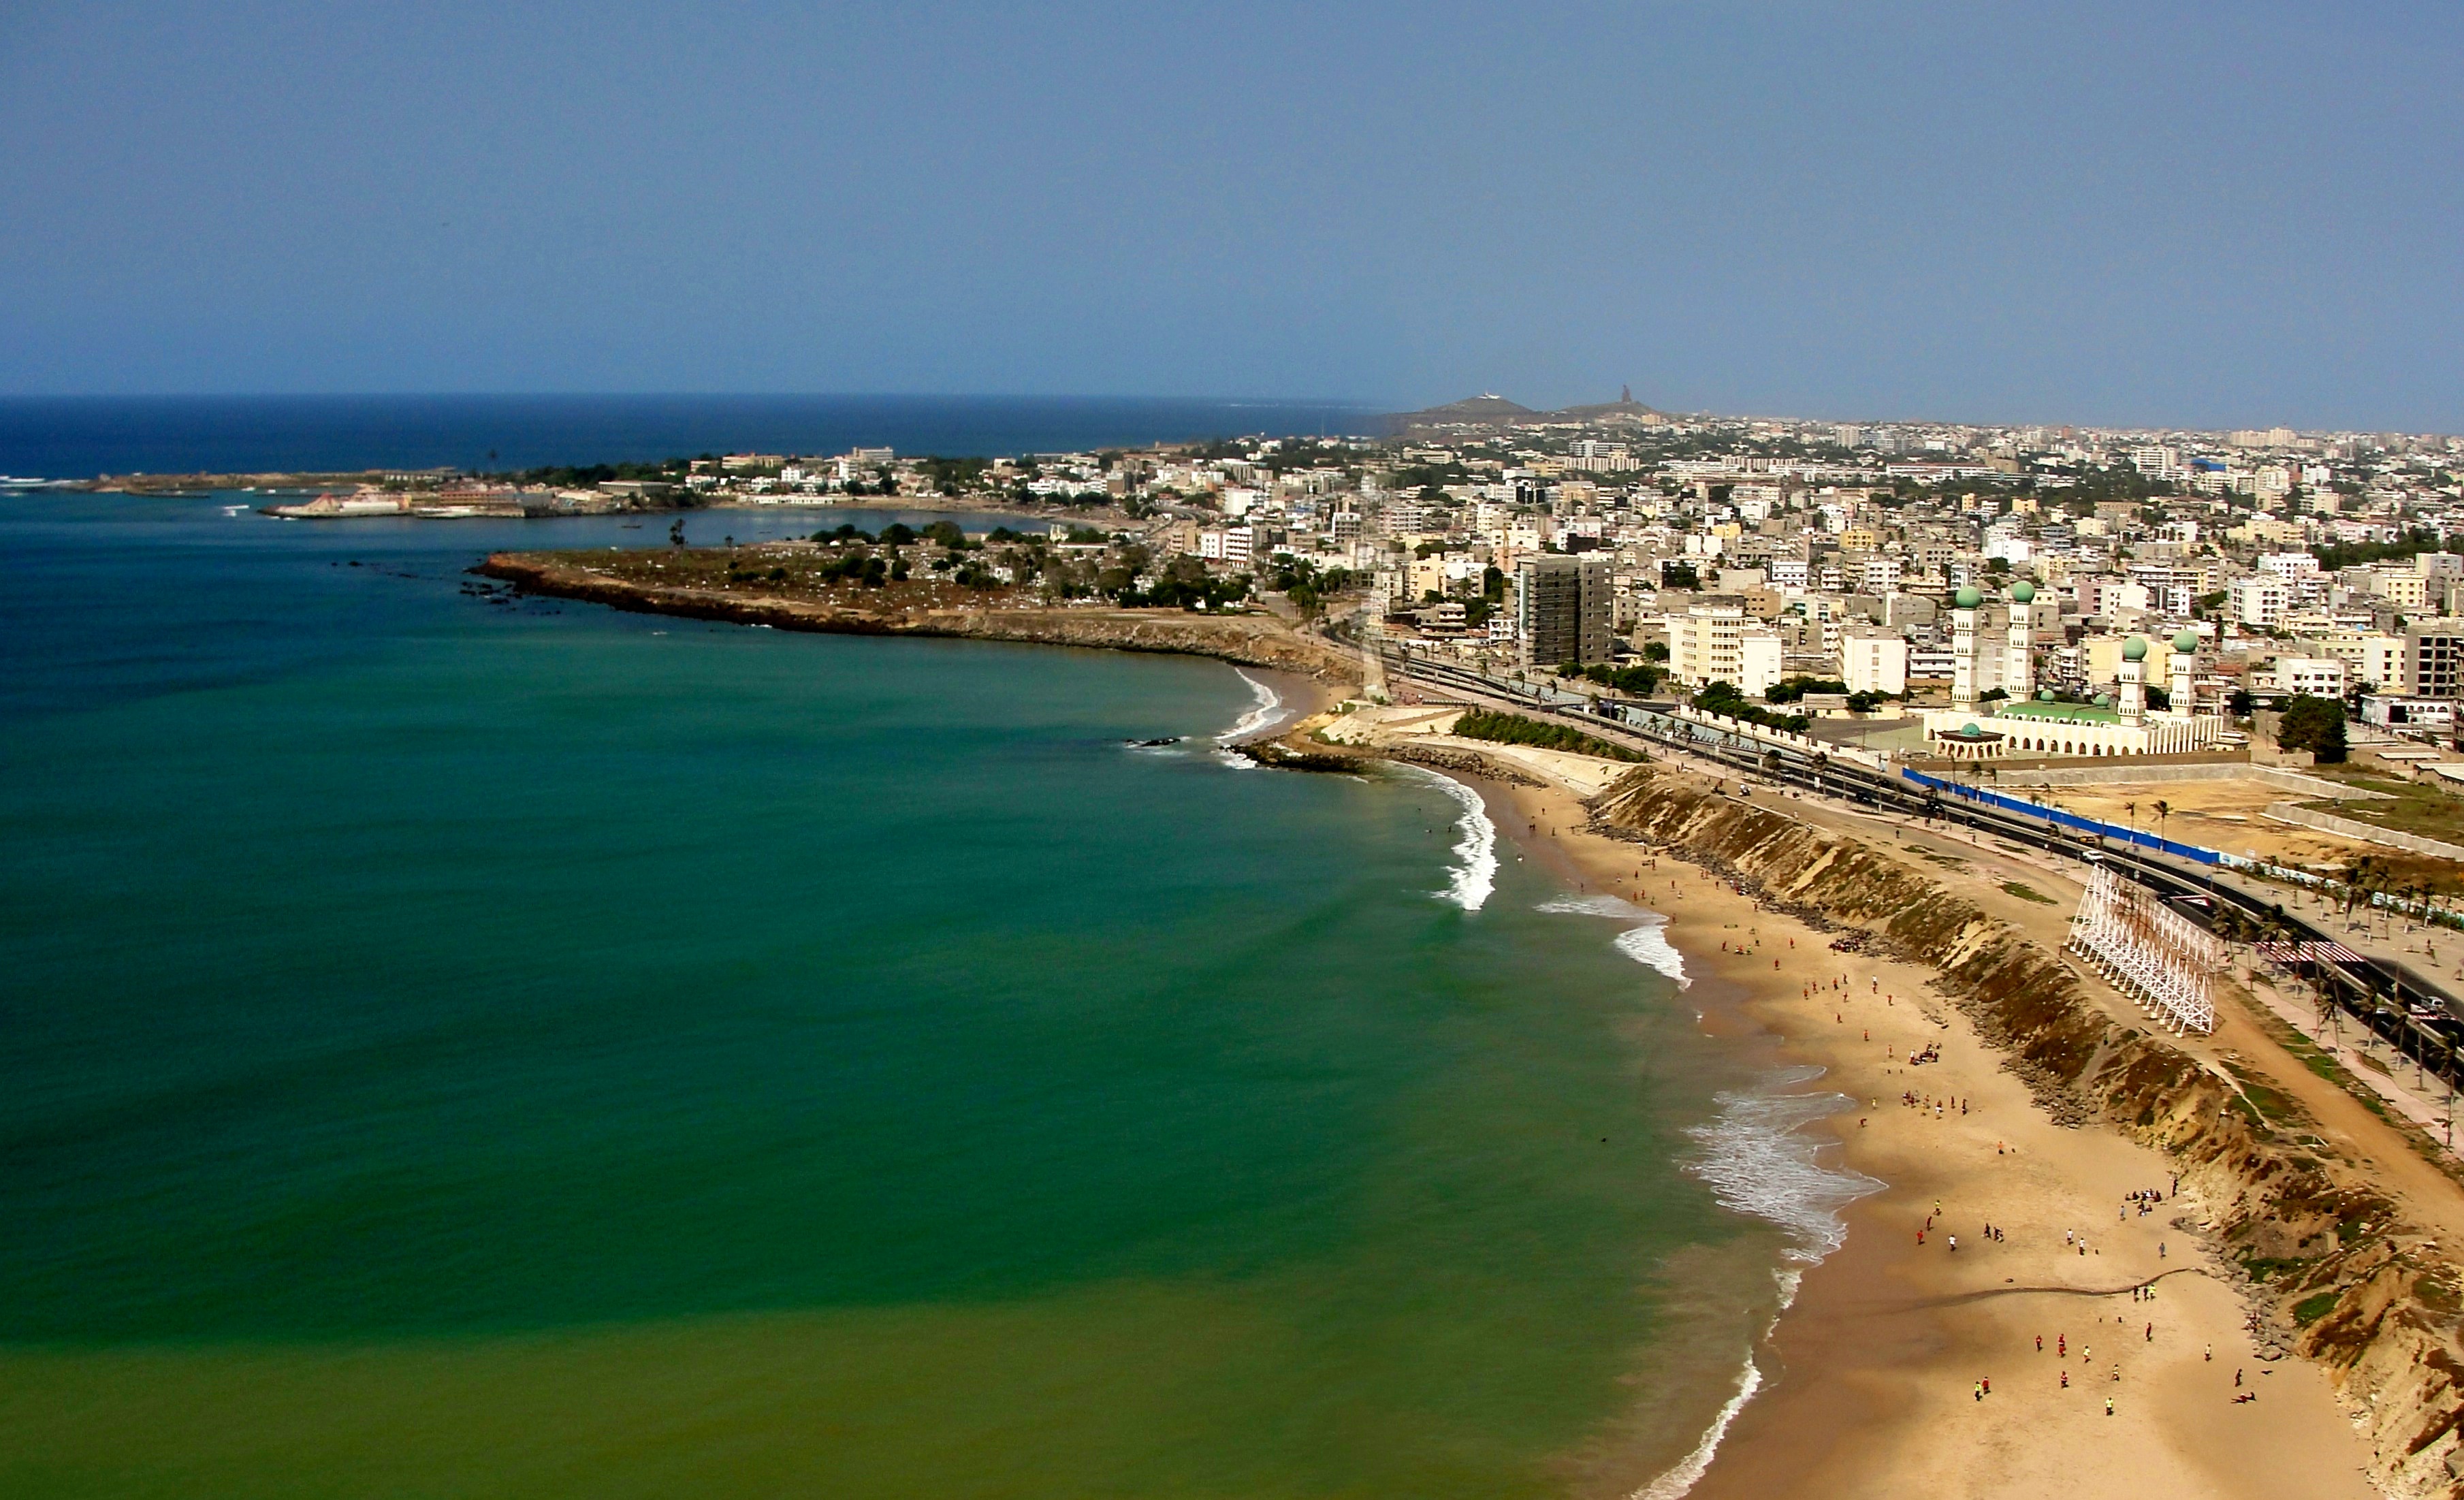 Dakar Senegal - Looking North